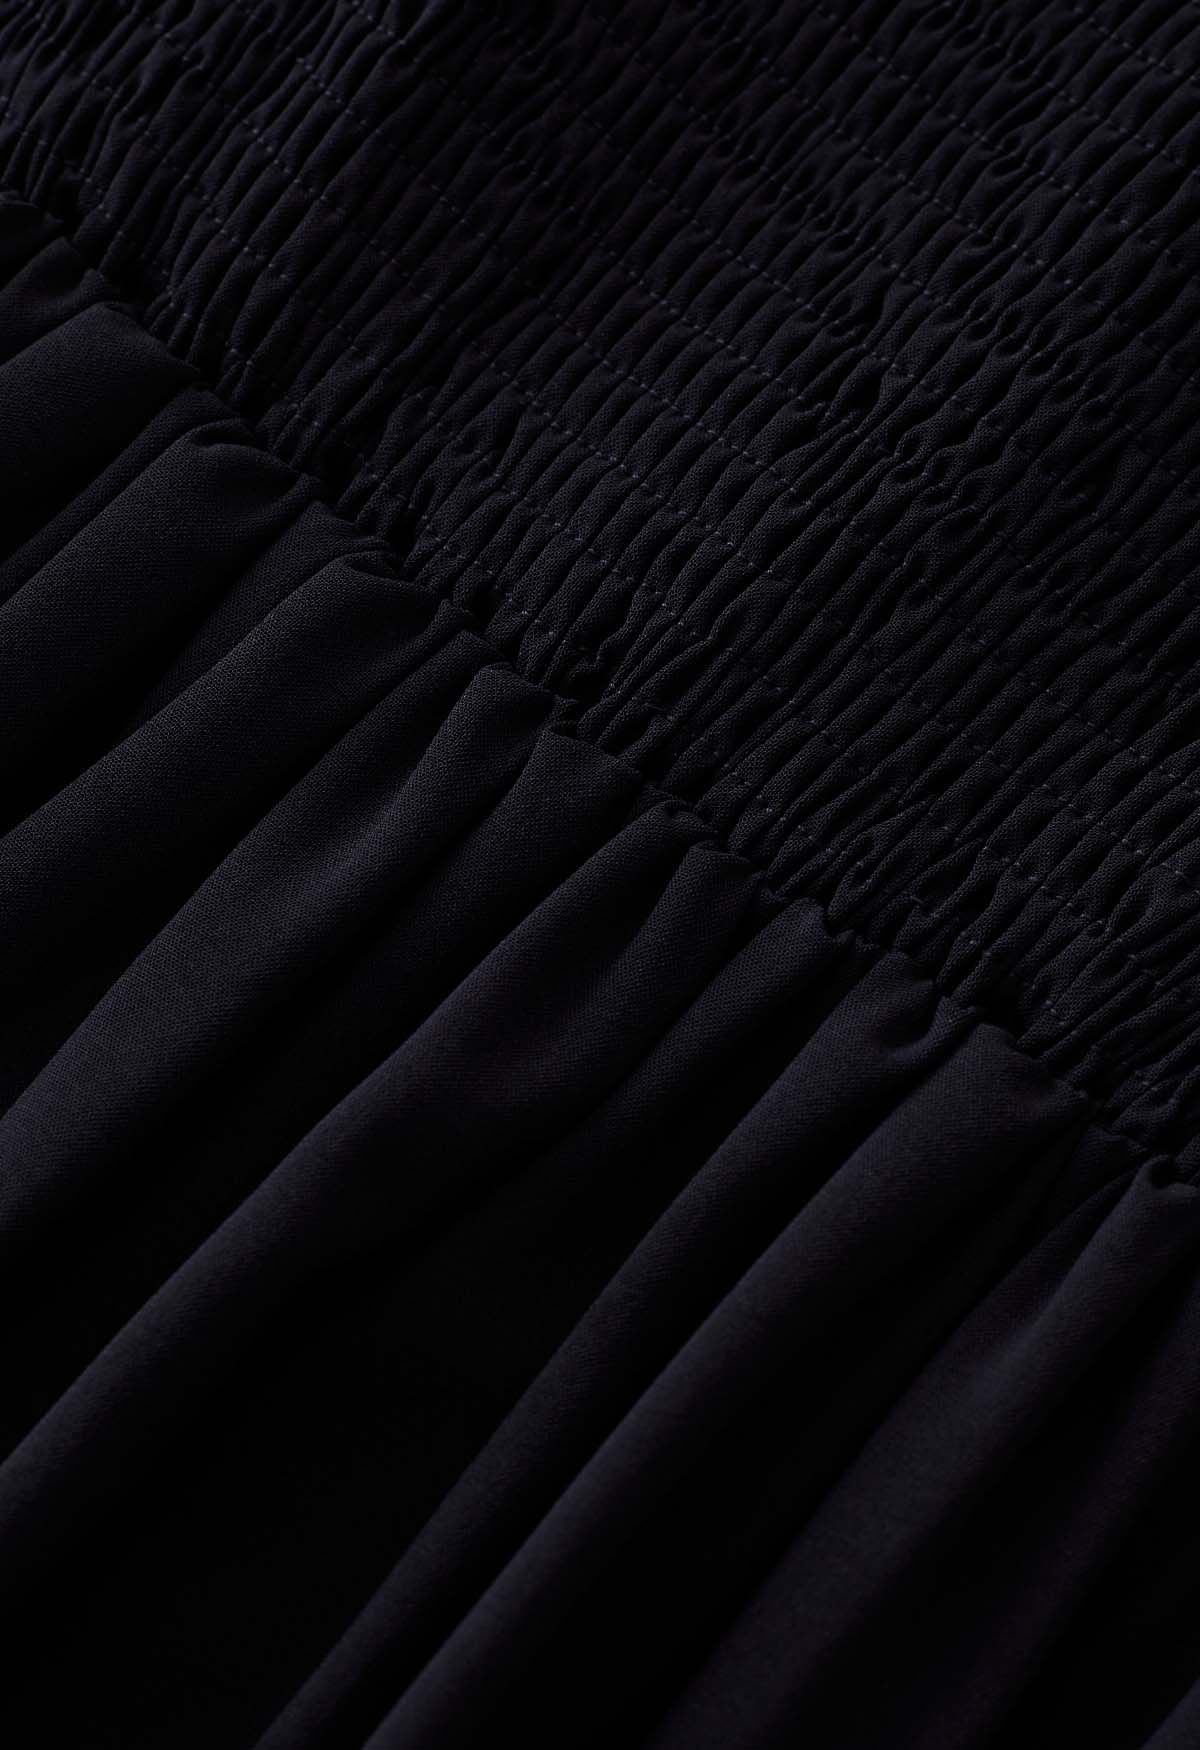 Cami-Kleid mit Rüschensaum und Schulterbindung in Schwarz